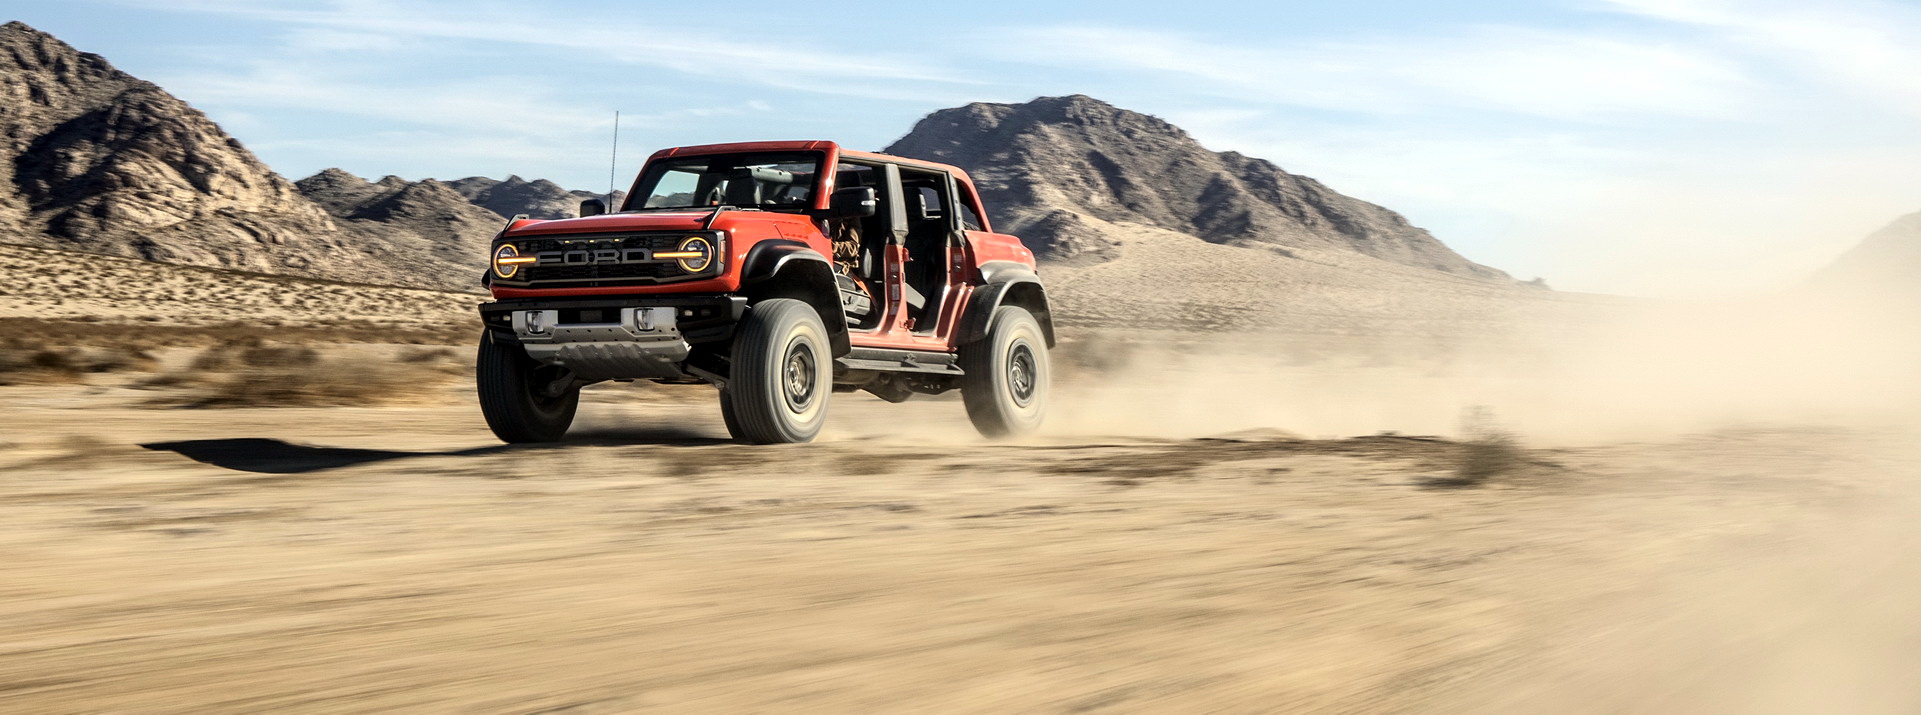 Yeni Ford Bronco Raptor tanıtıldı: Daha güçlü ve yetenekli